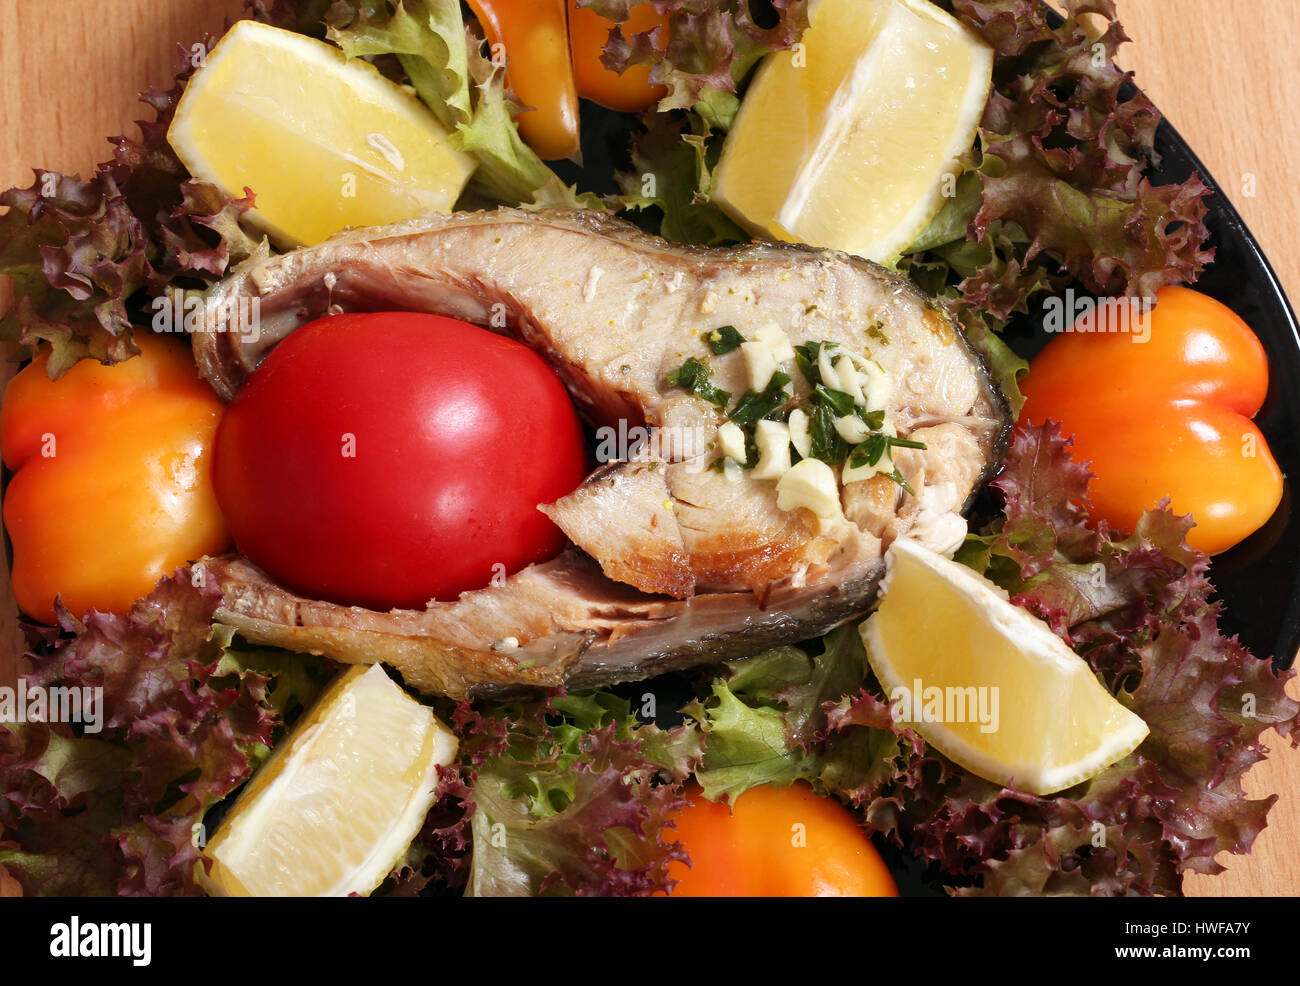 seafood salmon with tomato lemon and salad Stock Photo